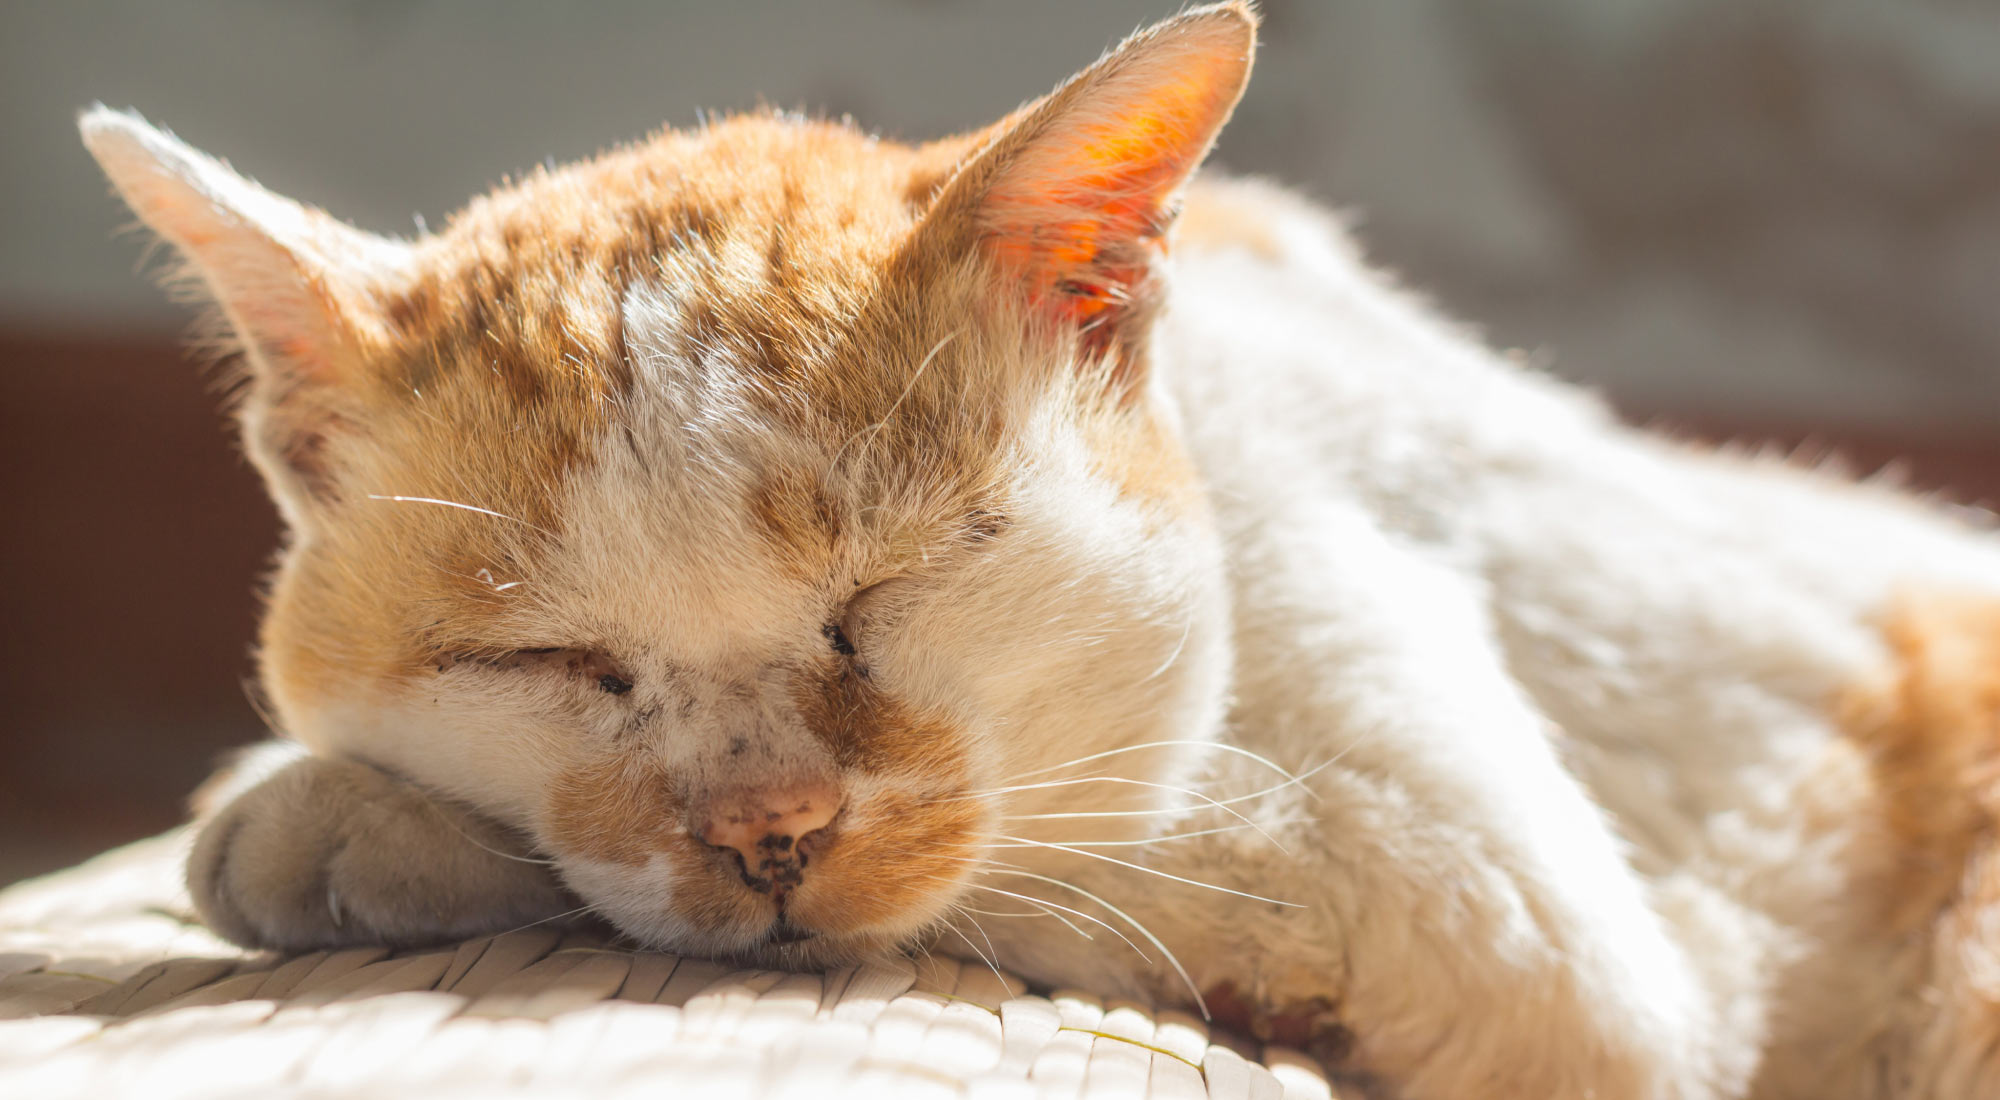 Senior cat taking a nap in the sun